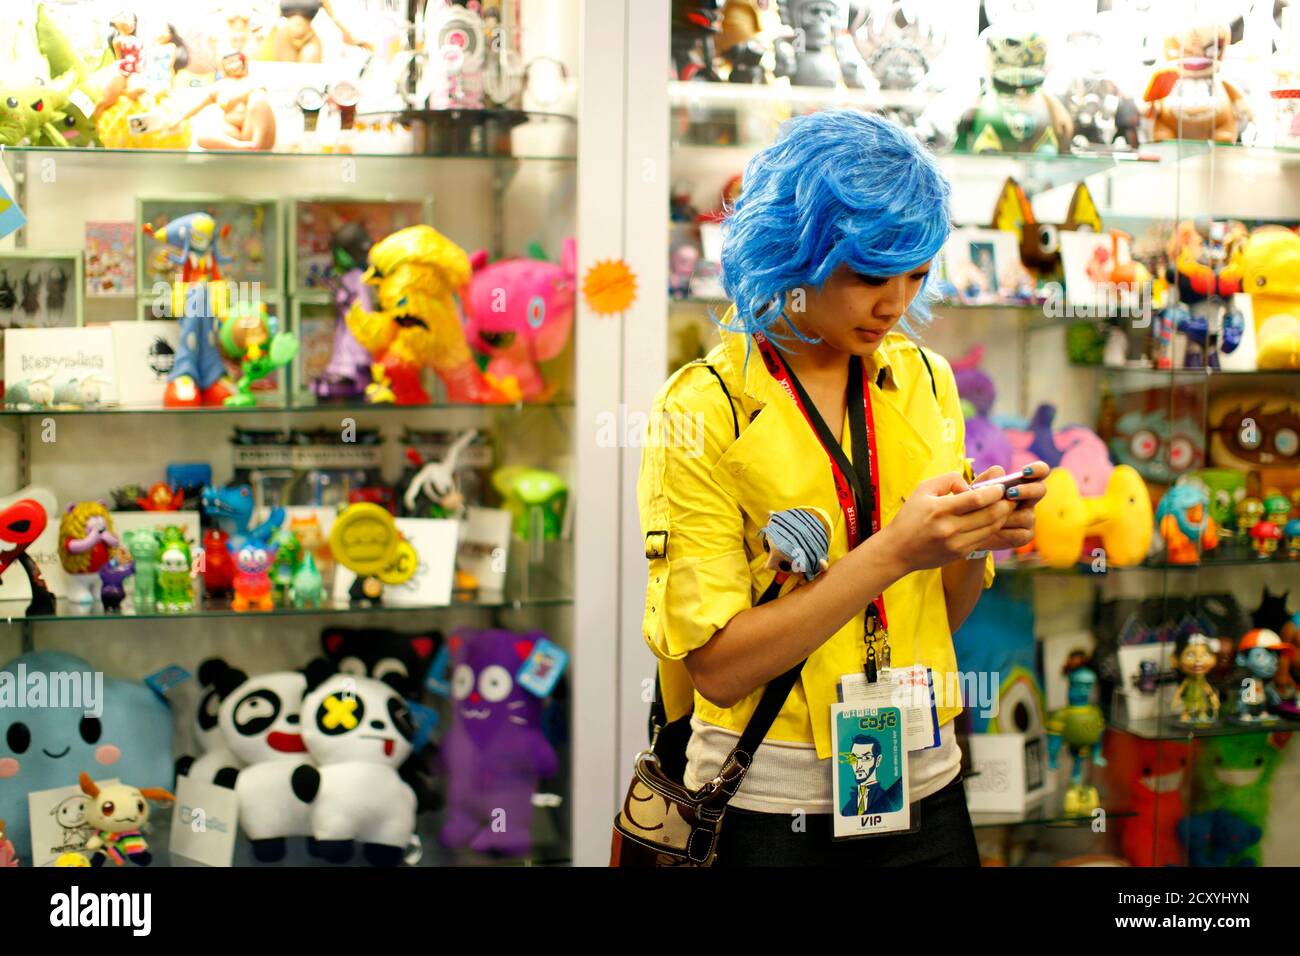 Un partecipante vestito con testi in costume su un telefono cellulare presso un negozio di giocattoli al piano congressi Comic con durante l'evento di cultura pop a San Diego, California, 22 luglio 2011. REUTERS/Mike Blake (STATI UNITI - Tag: SOCIETÀ DI INTRATTENIMENTO) Foto Stock